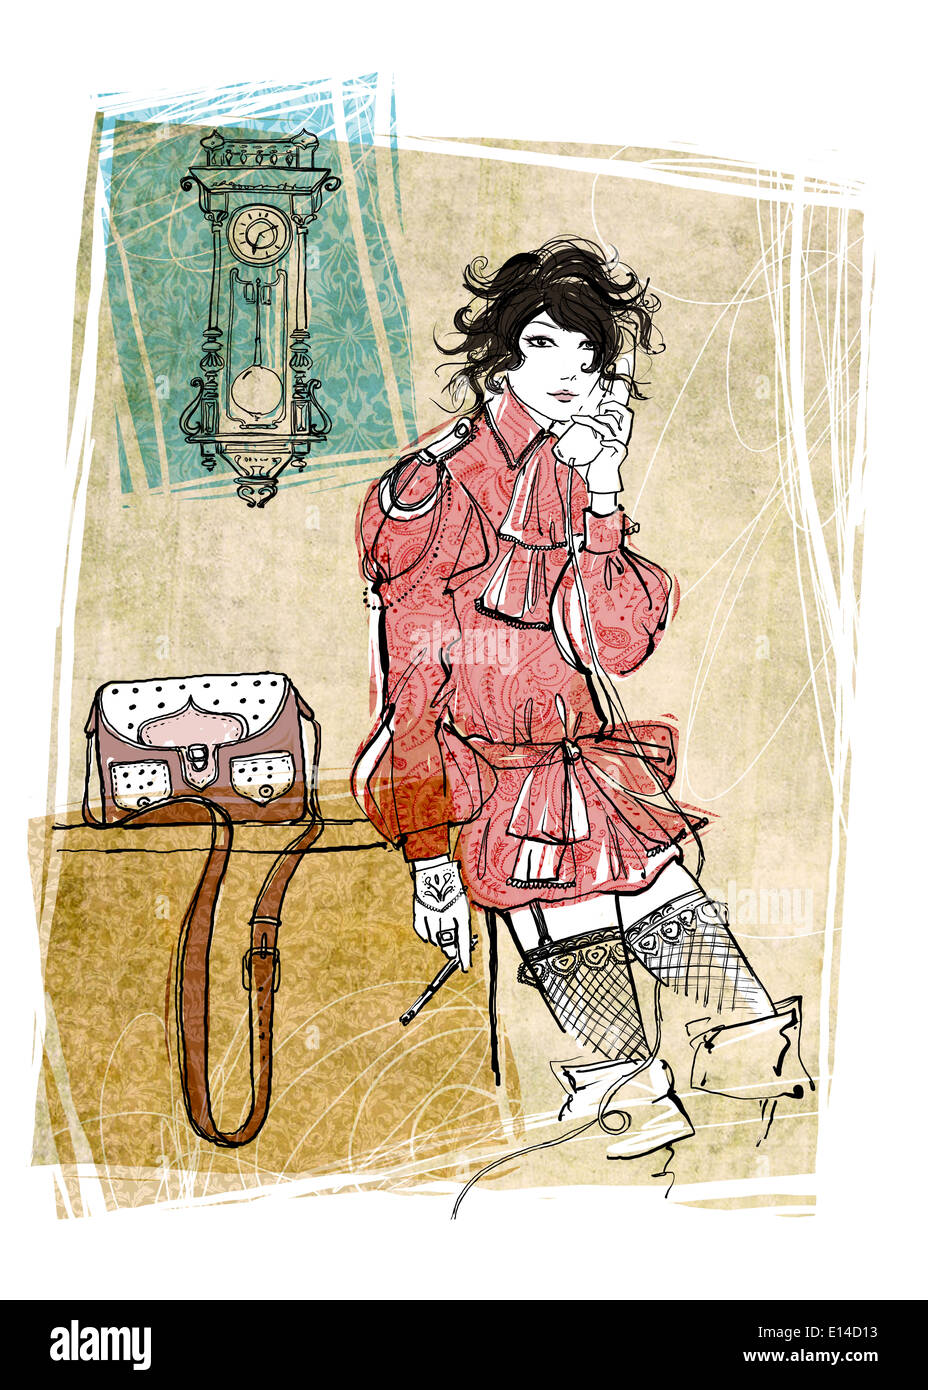 Illustration de la femme à l'aide de téléphone fixe dans la chambre Banque D'Images